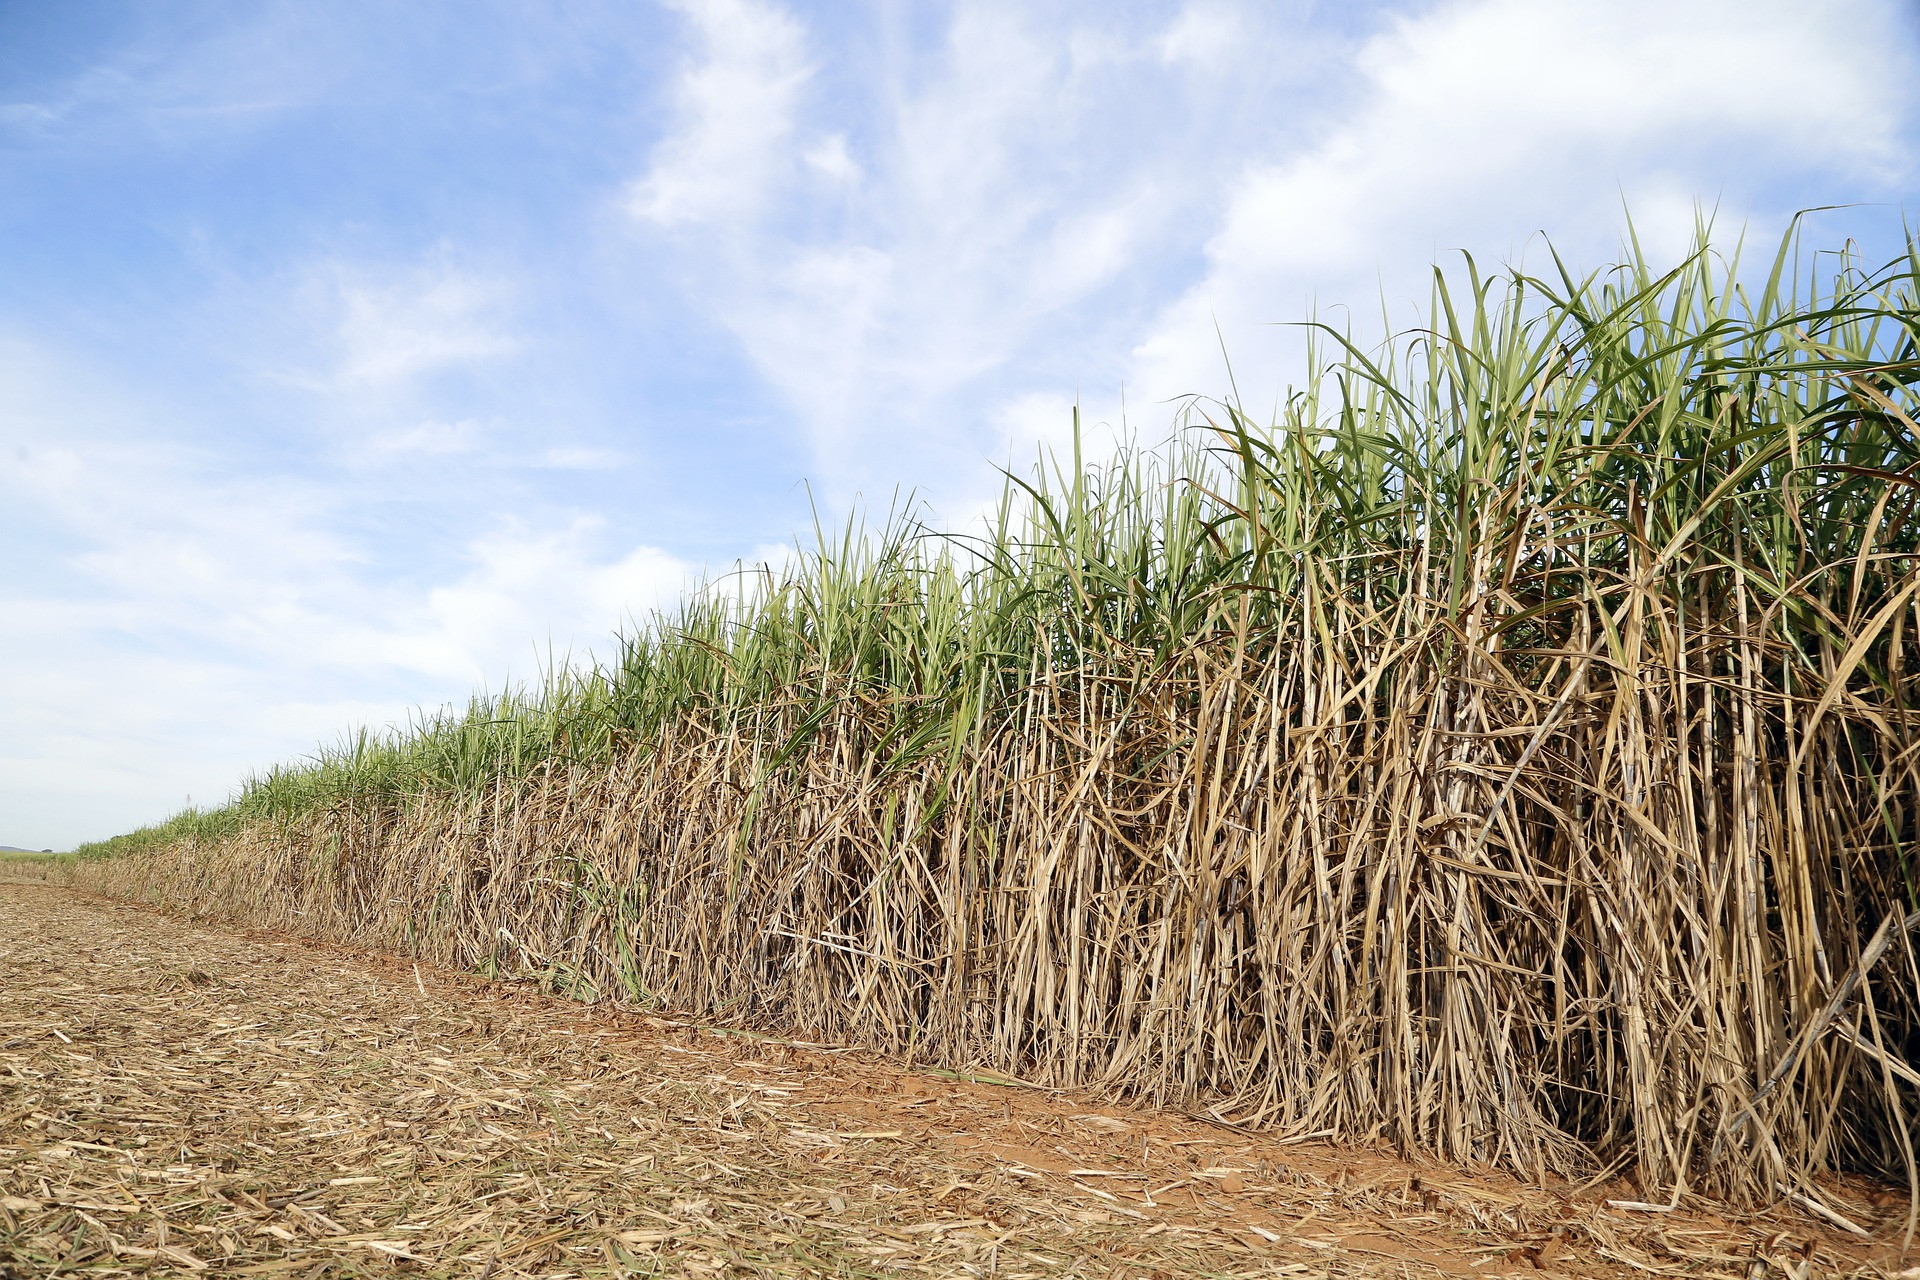 Plantio de cana no Brasil removeu 196 milhões de toneladas de CO2 em duas décadas, diz estudo. Na imagem: Cultivo de cana-de-açúcar (Foto: João Lima/Pixabay)